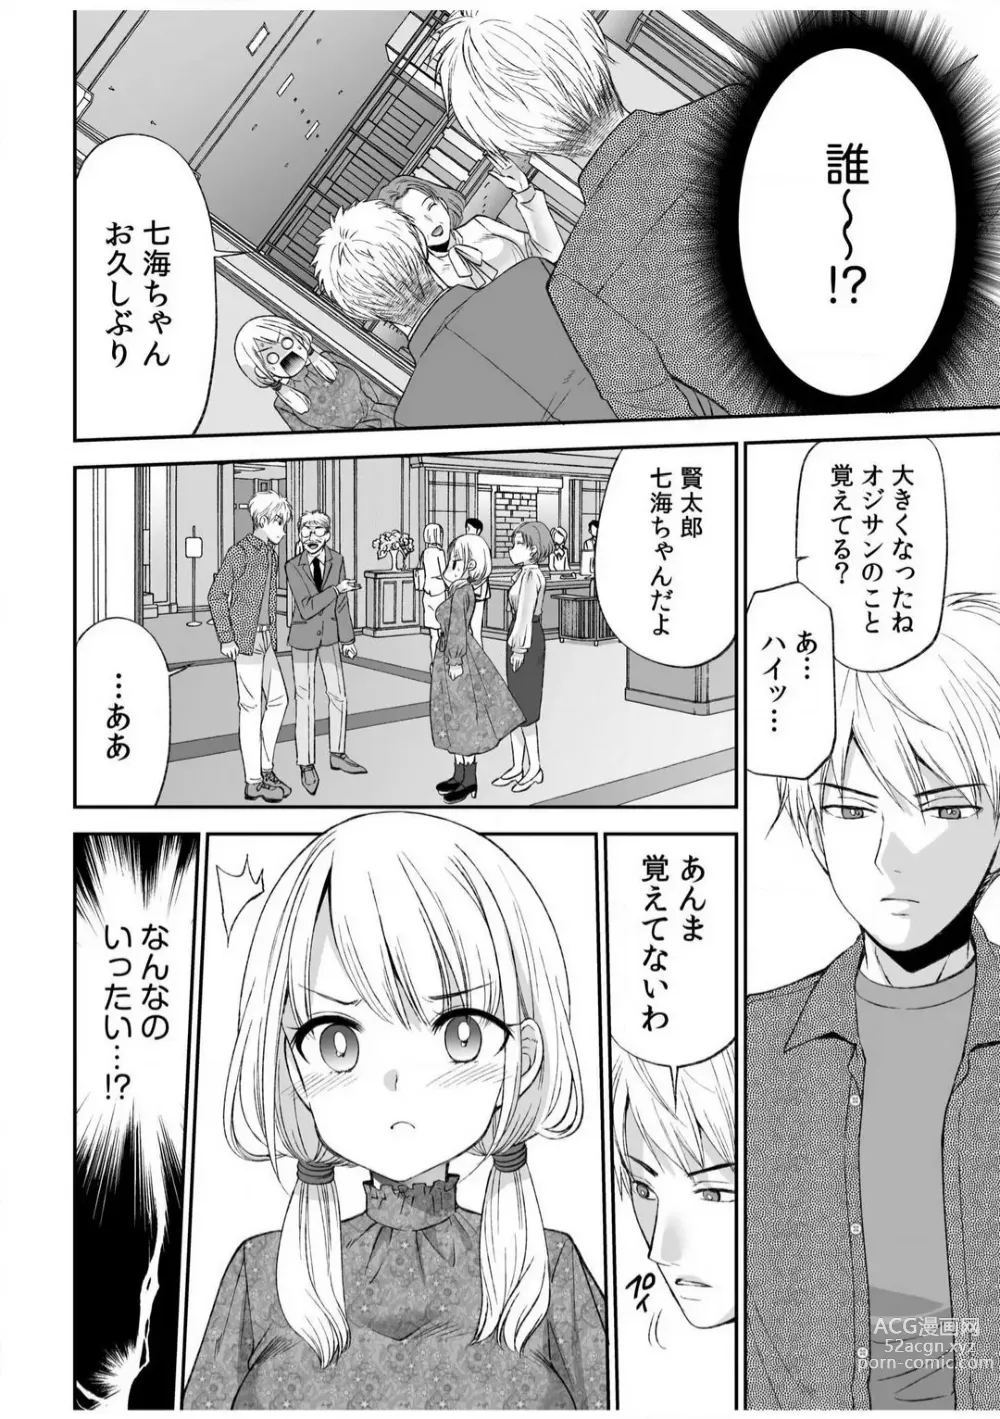 Page 5 of manga Yada... Naka Ippai Shinaide...